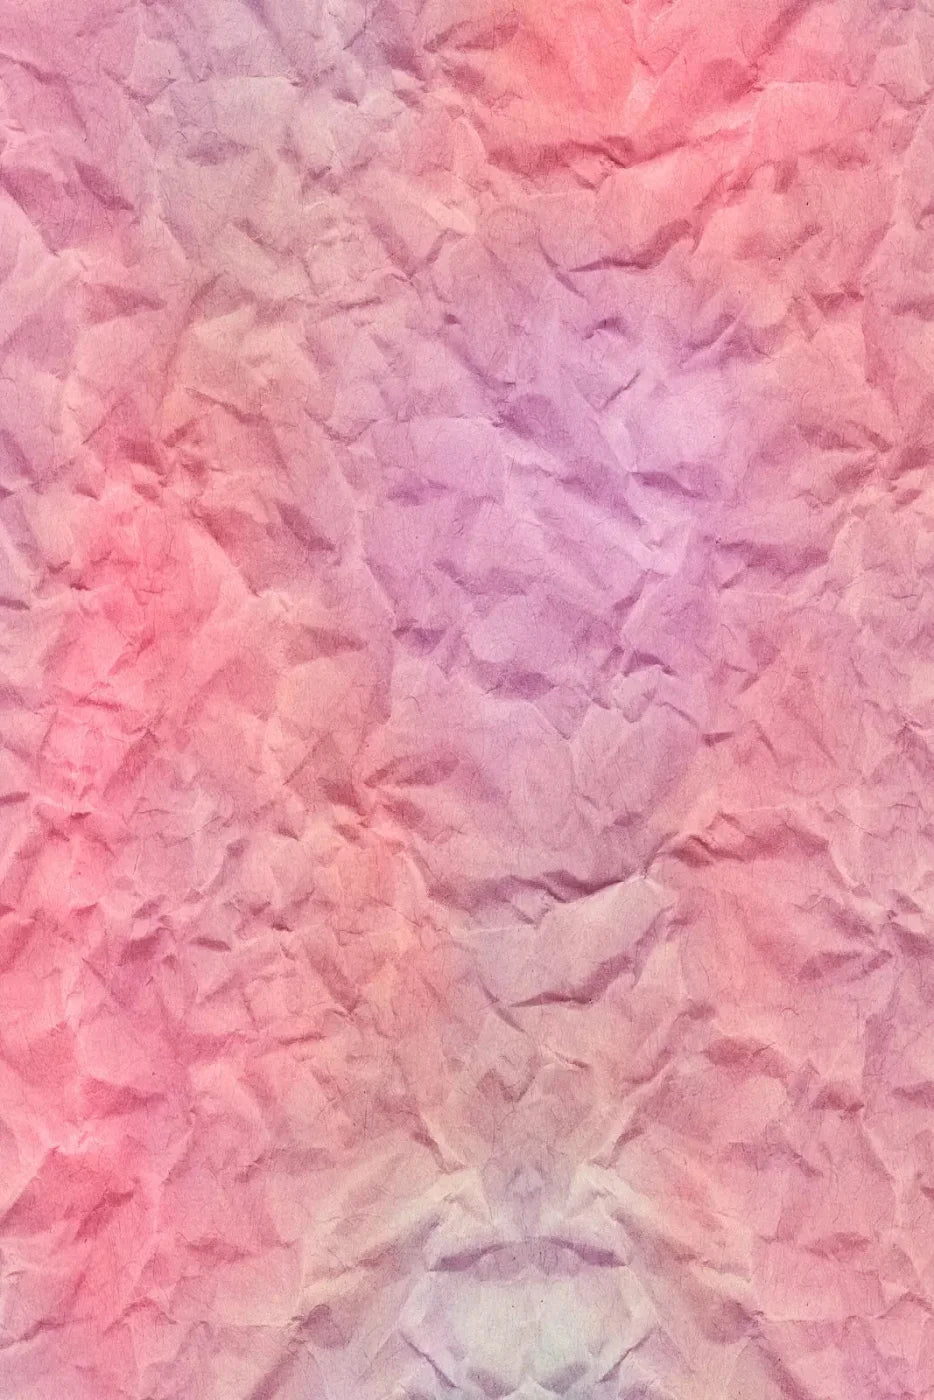 Crumple 4X5 Rubbermat Floor ( 48 X 60 Inch ) Backdrop